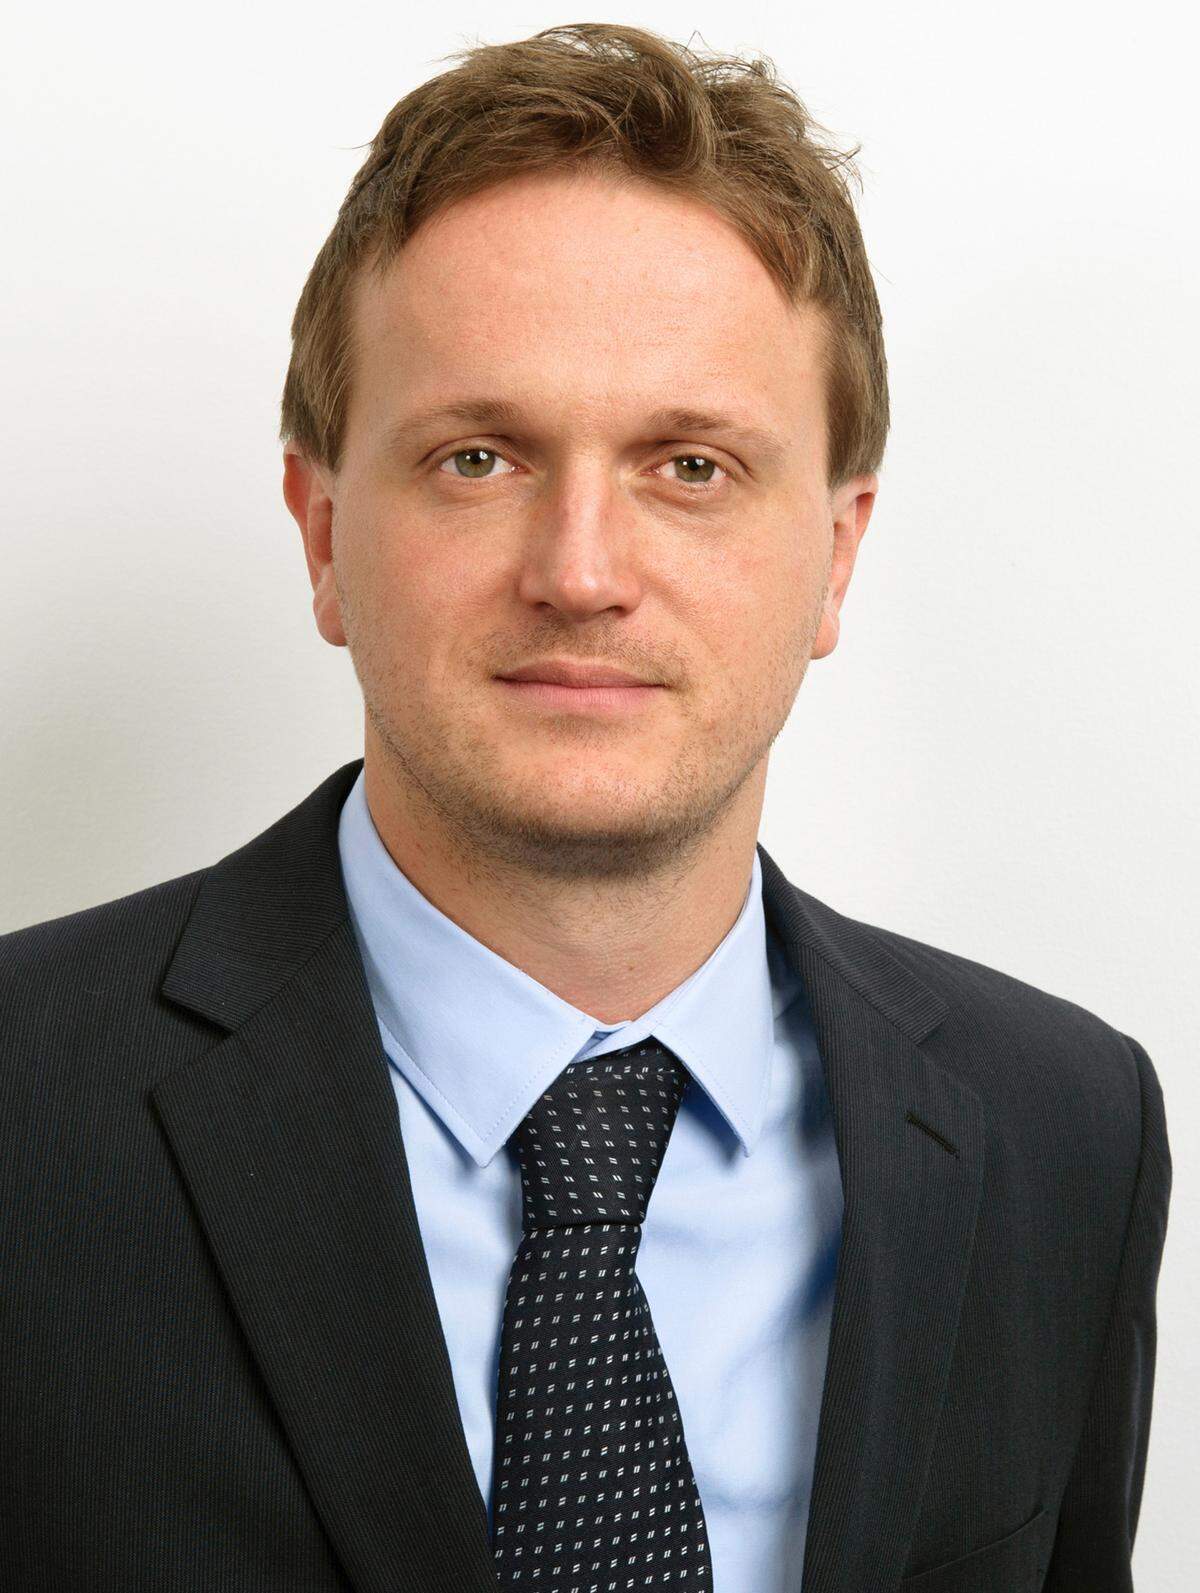 Klaus Pfeiffer (31) verstärkt ab sofort als Anwalt den Real Estate Desk von DORDA BRUGGER JORDIS. Pfeiffer ist Experte für Real Estate, M A und Bauvertragsrecht. Für den Real Estate Desk von DORDA BRUGGER JORDIS ist er seit Jänner 2010 tätig, zuvor arbeitete er als Rechtsanwaltsanwärter bei Graf Pitkowitz in Wien (2007-2009) und einer weiteren Wirtschaftskanzlei in Salzburg (2005-2006)